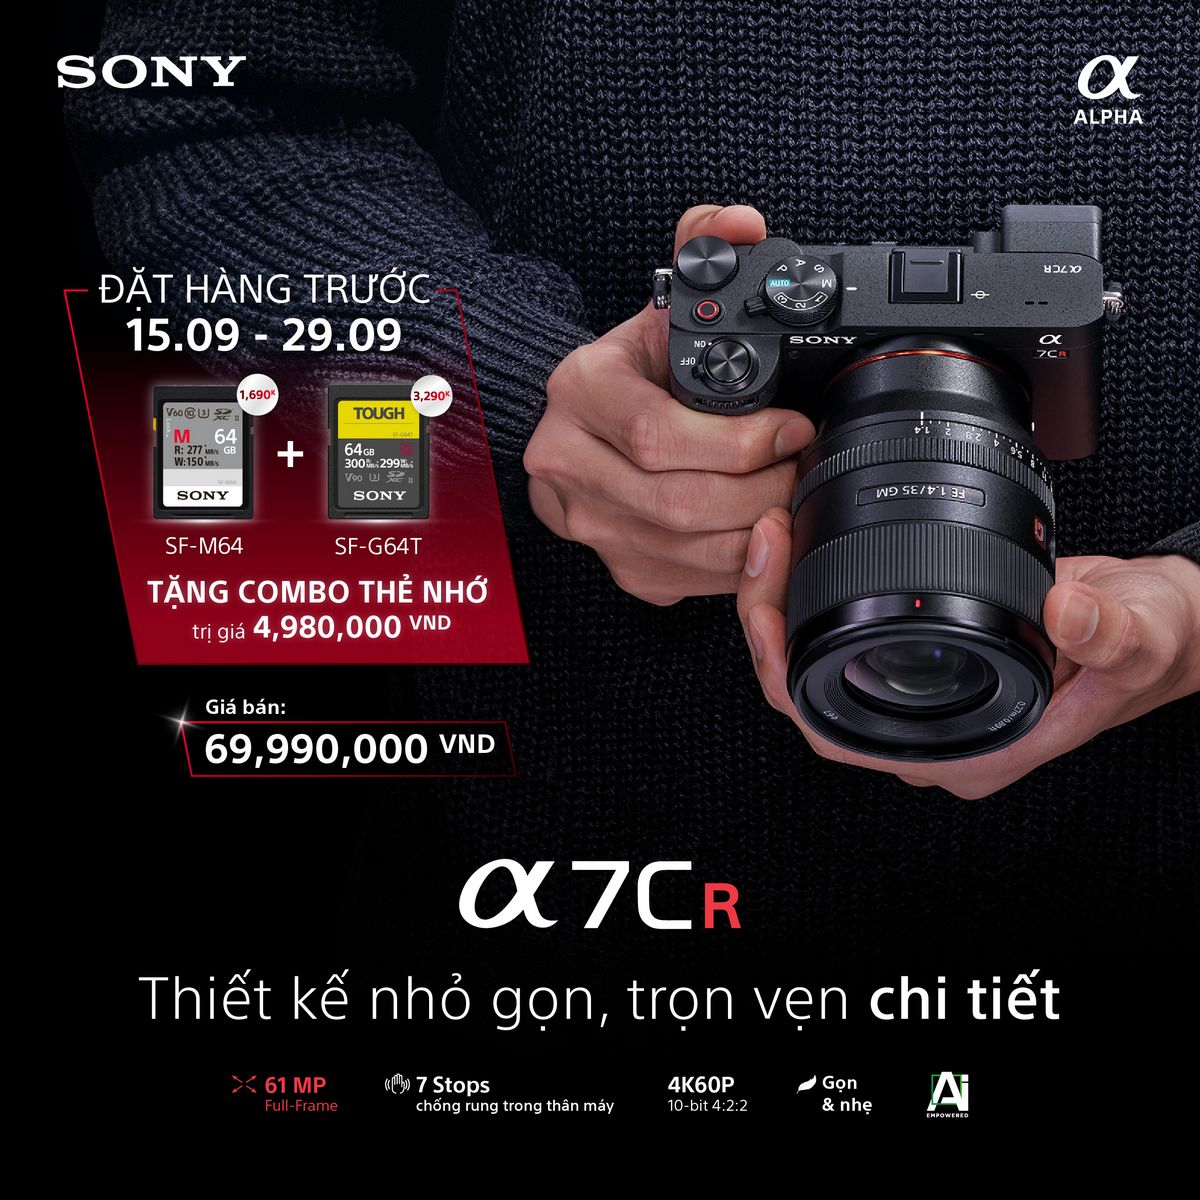 Sony Alpha 7CR và 7C II: Bộ đôi máy ảnh nhỏ gọn ra mắt